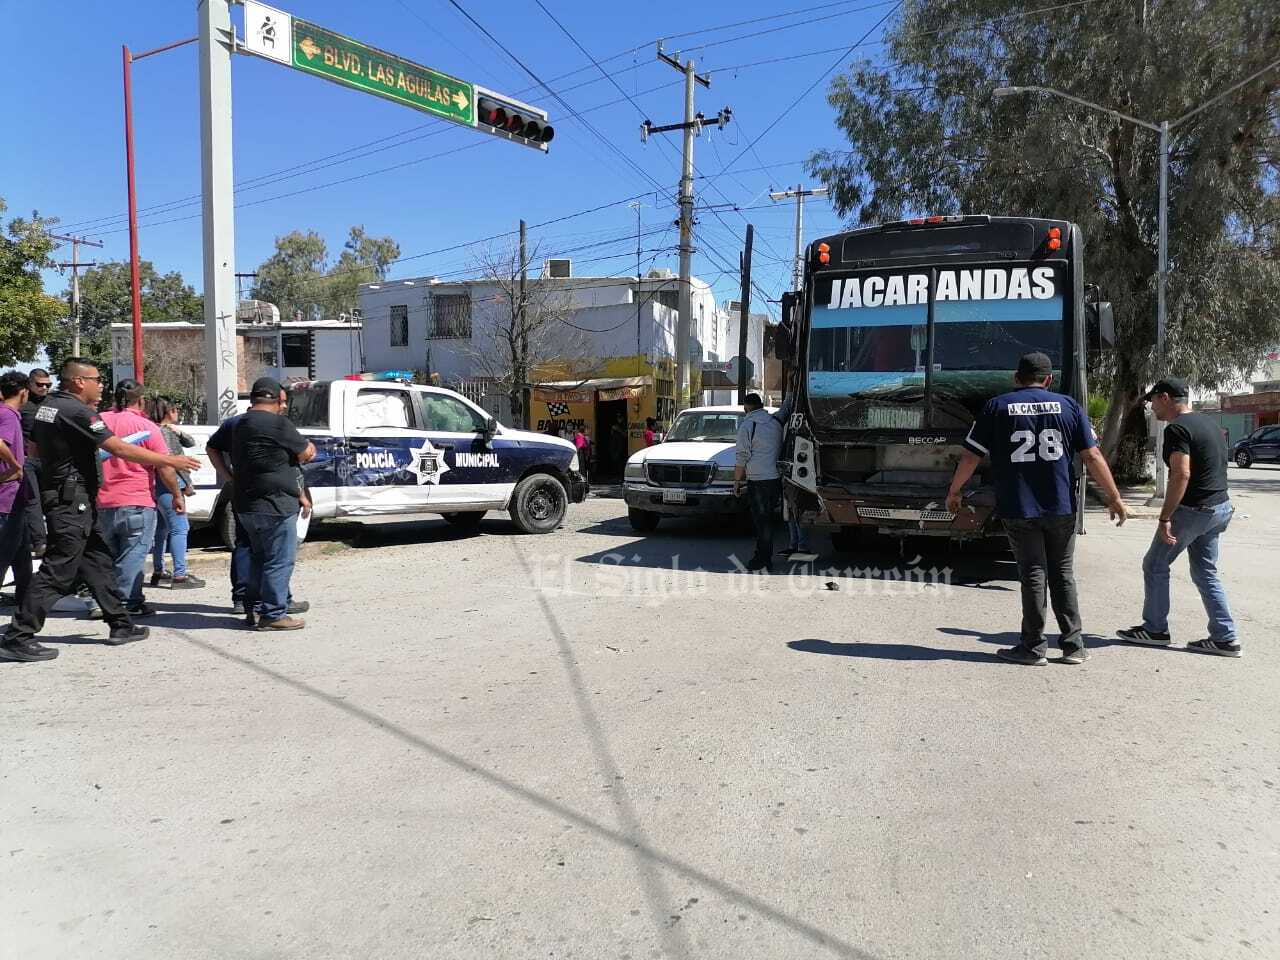 Patrulla de la Policía Municipal choca contra camión de la ruta Jacarandas